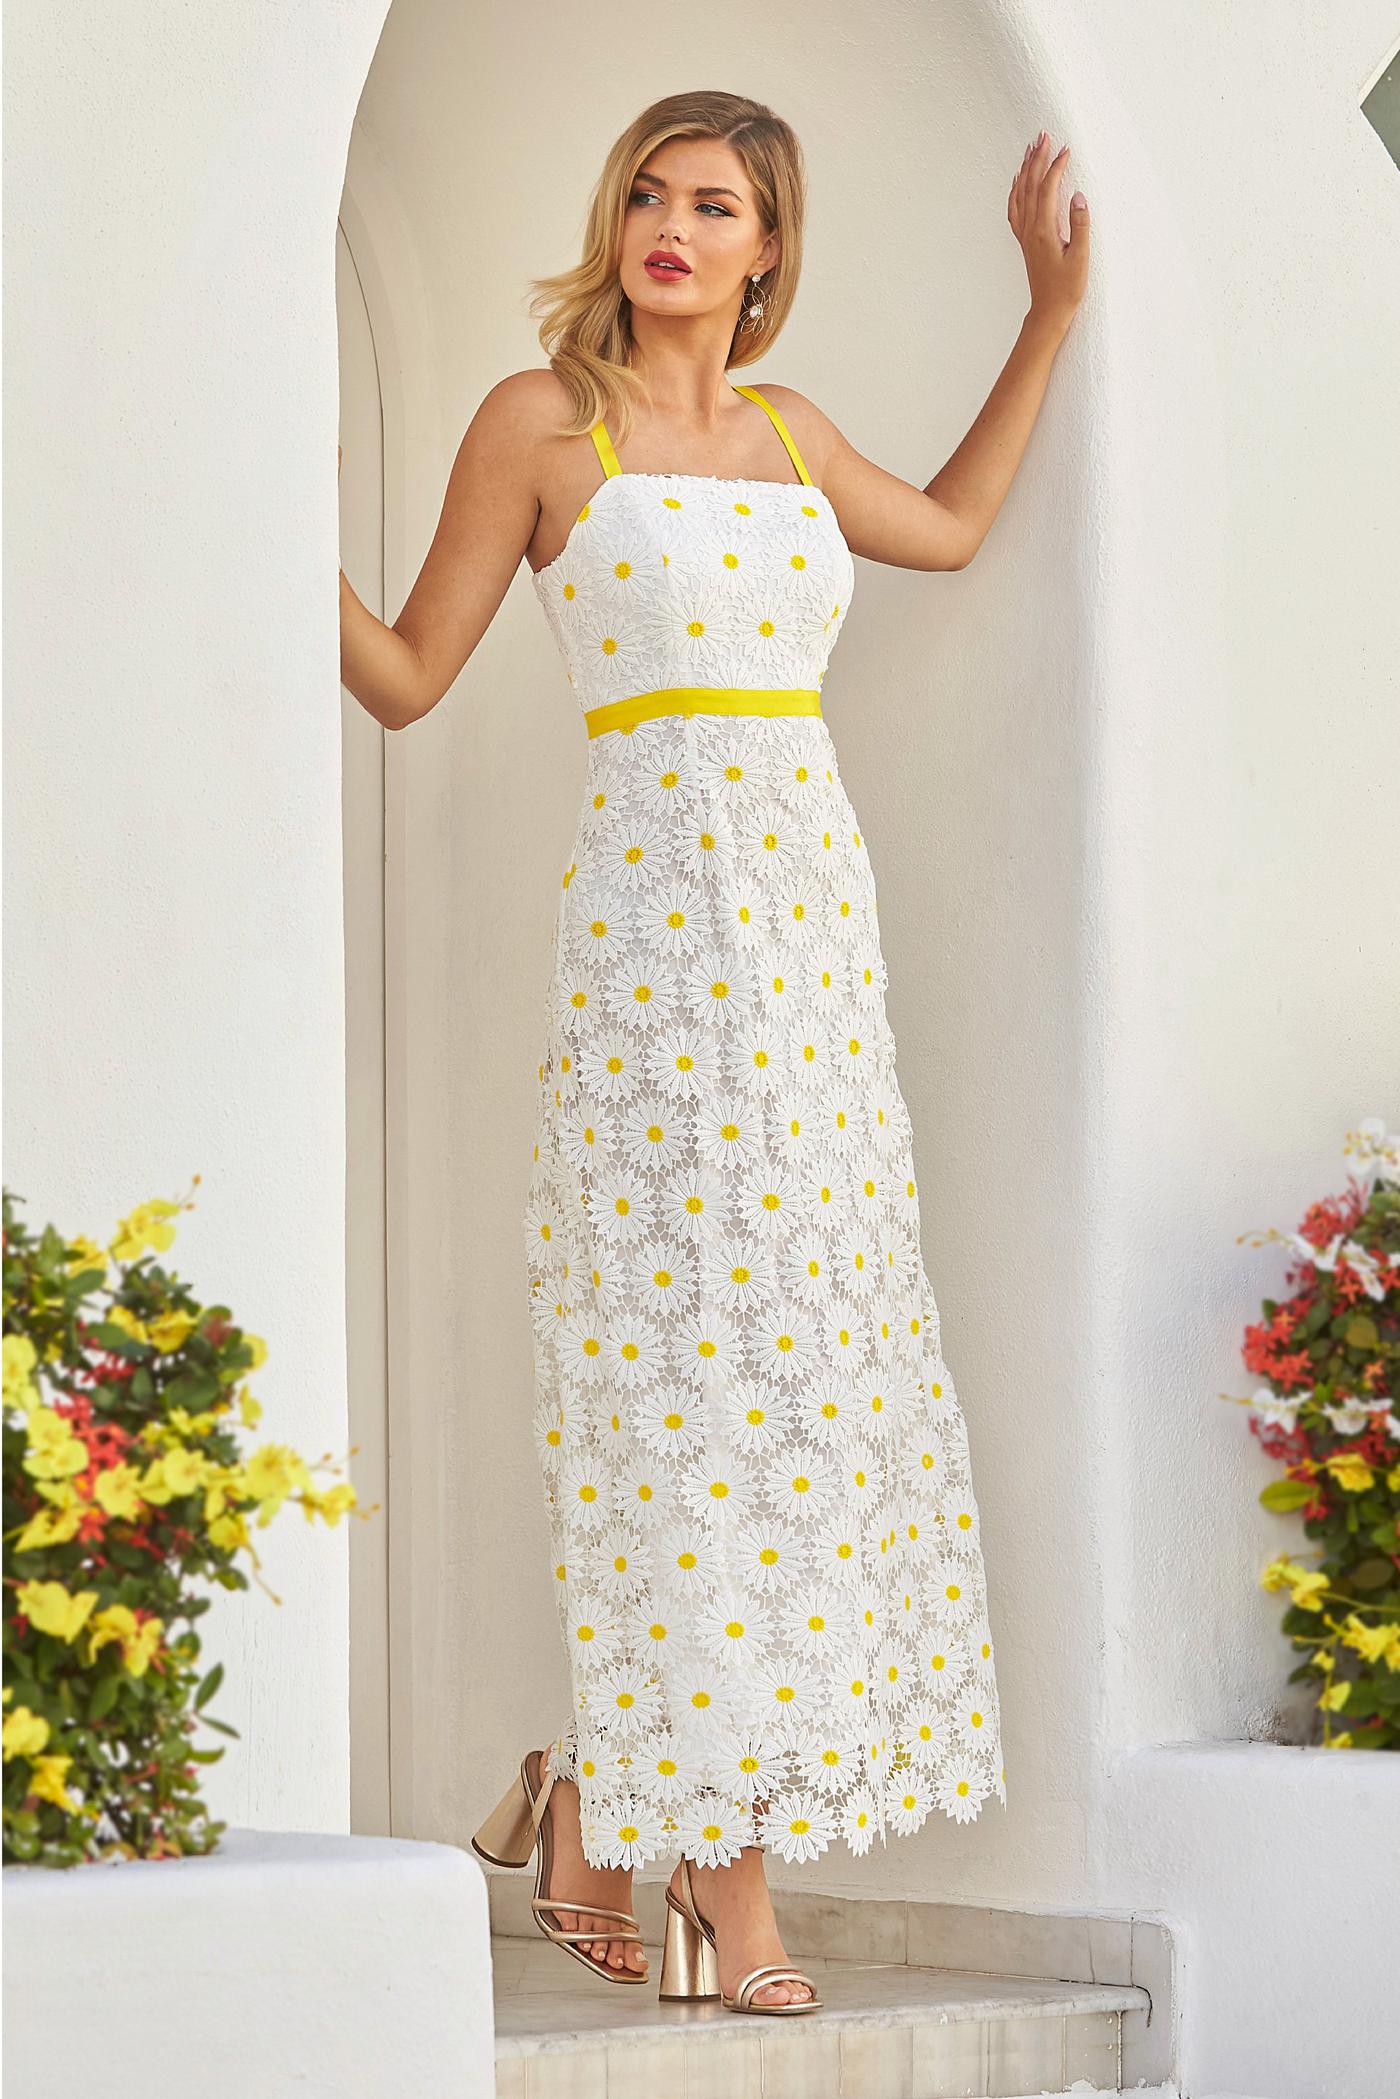 Daisy Lace Maxi Dress - White/Yellow | Boston Proper